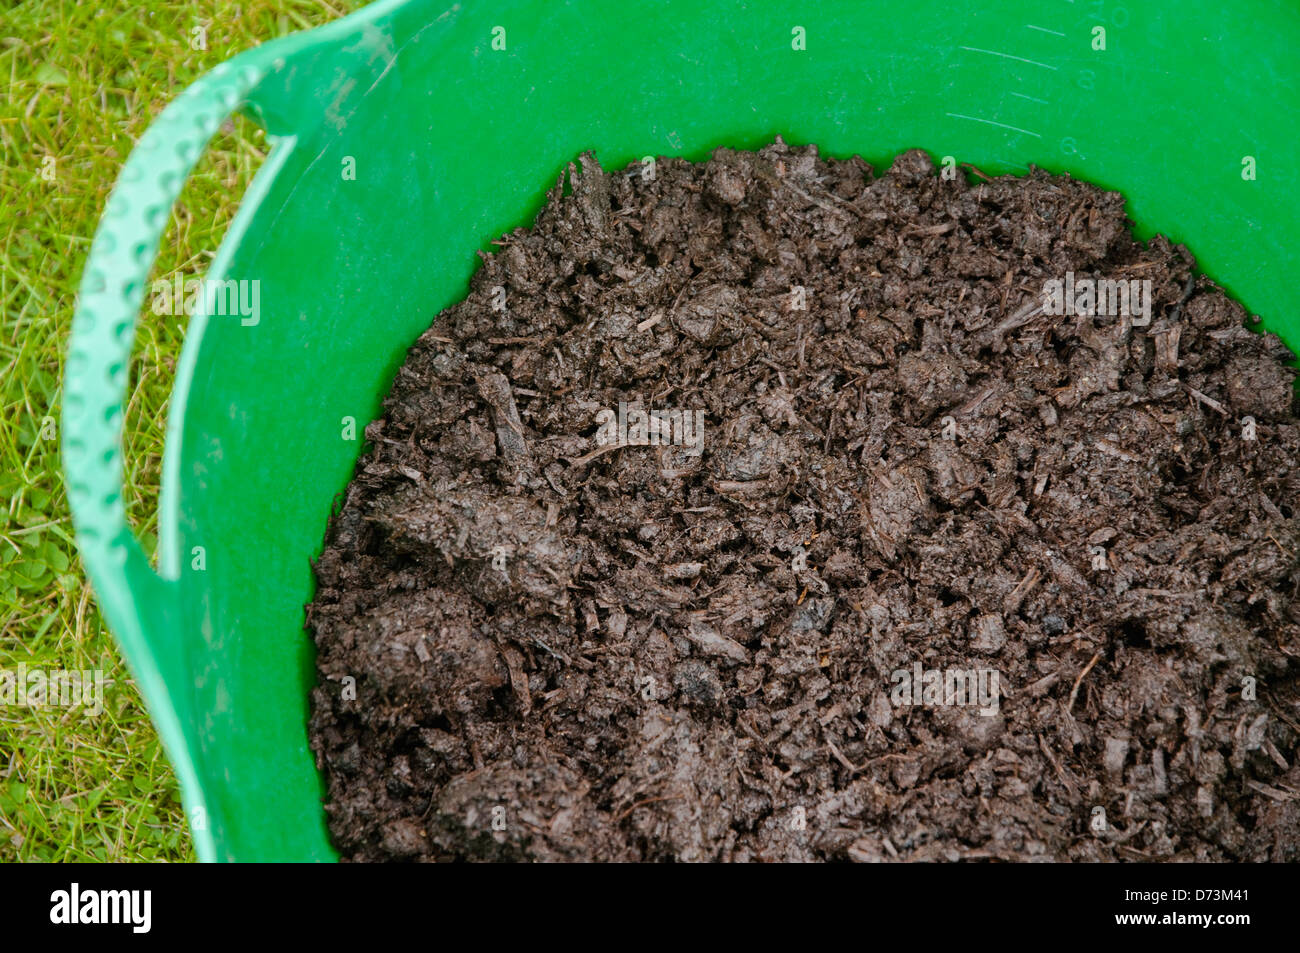 Estiércol de caballo mezclado con compost de champiñones. Un buen pajote / tapa de tierra y alimentación de suelo que beneficia a una amplia gama de siembra. Foto de stock